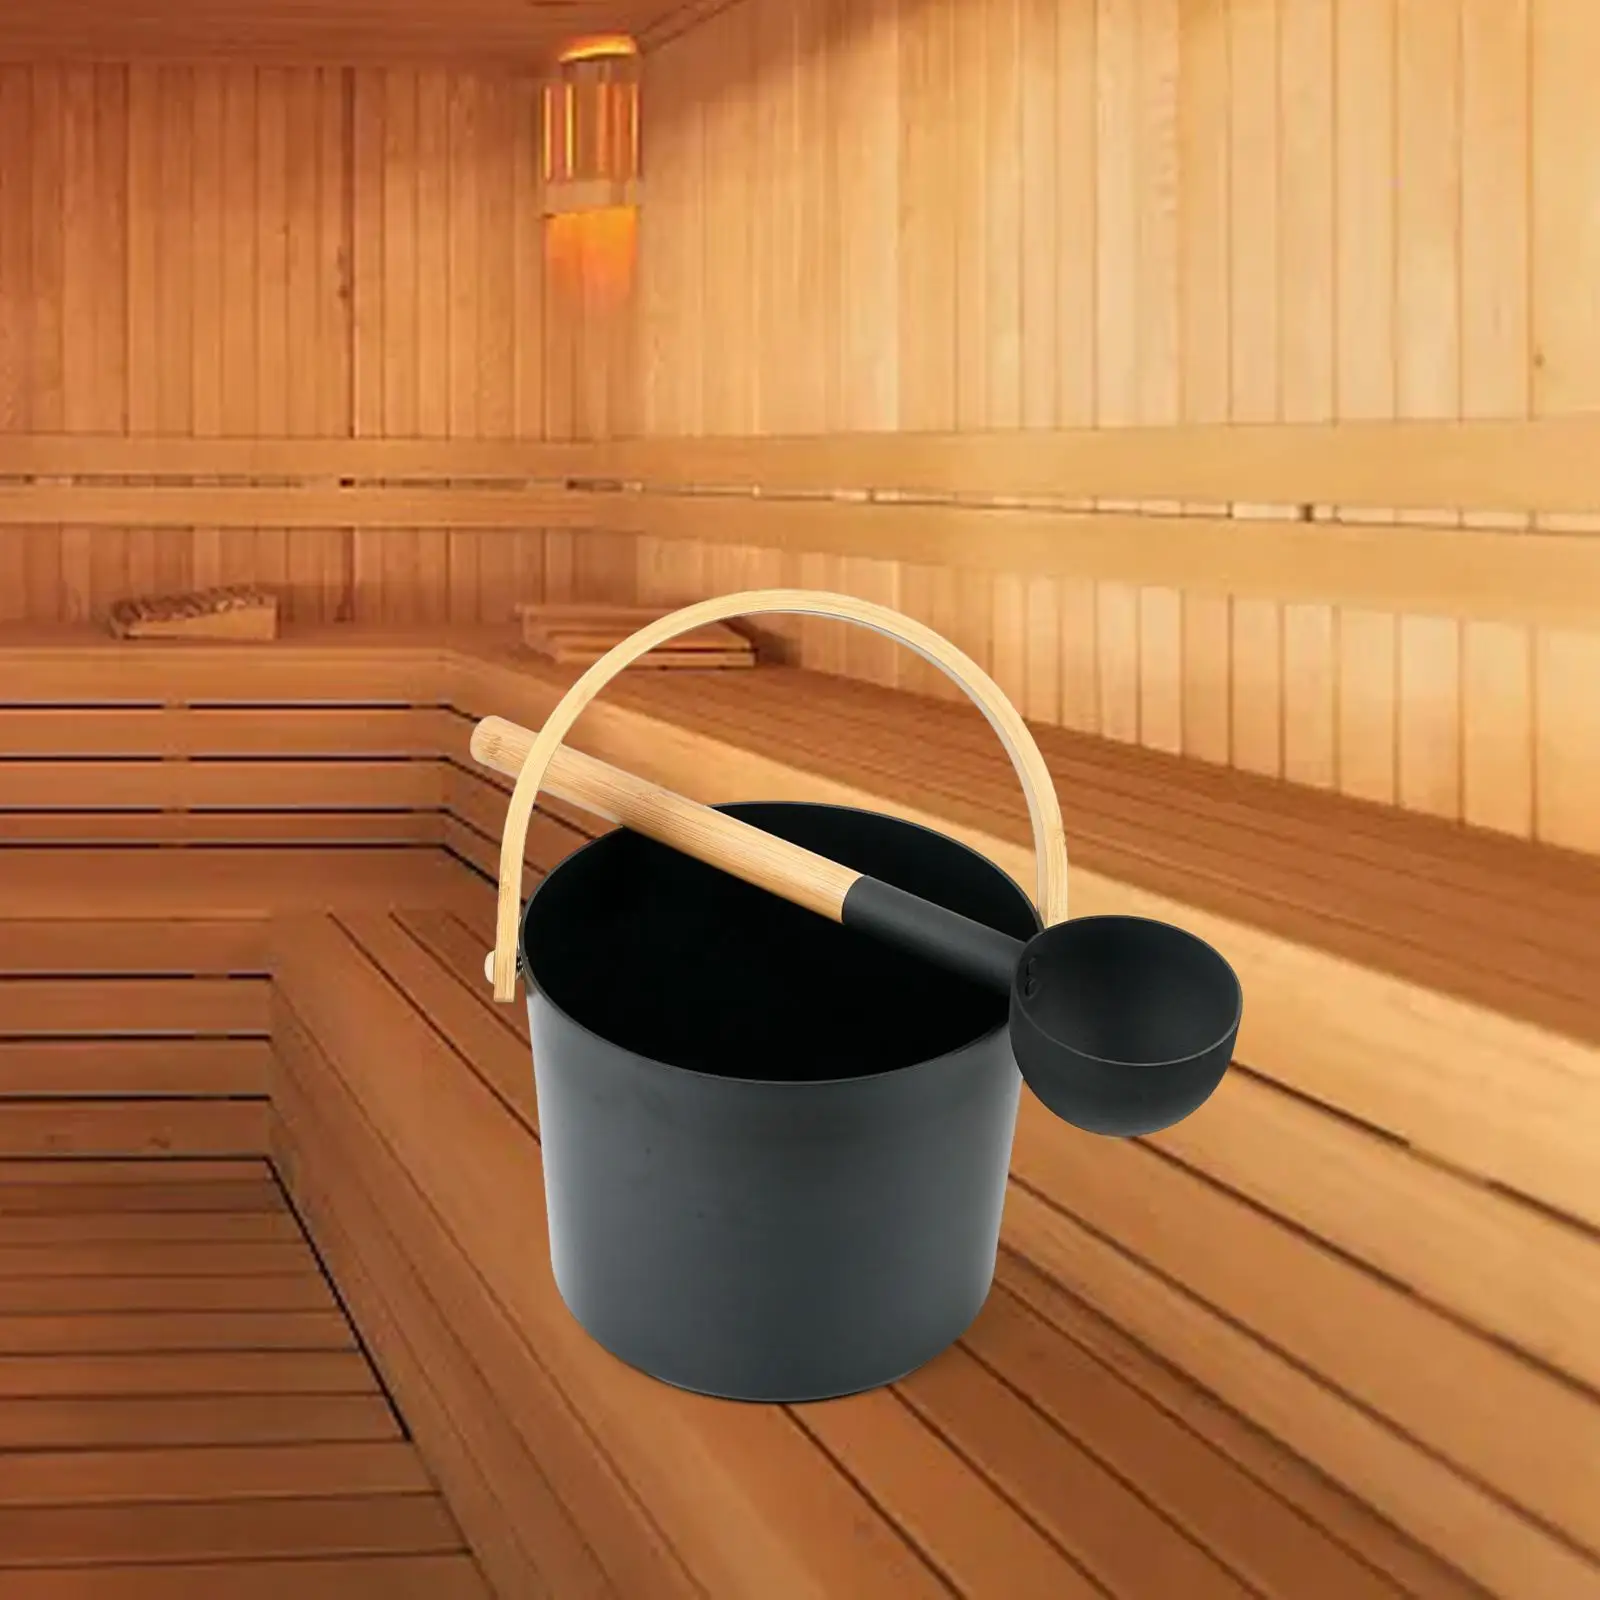 Aluminum Sauna Bucket with Ladle Durable Bamboo Handle 7 Liter SPA Sauna Barrel for Bathtub Household Sauna Room Bathroom Hotel